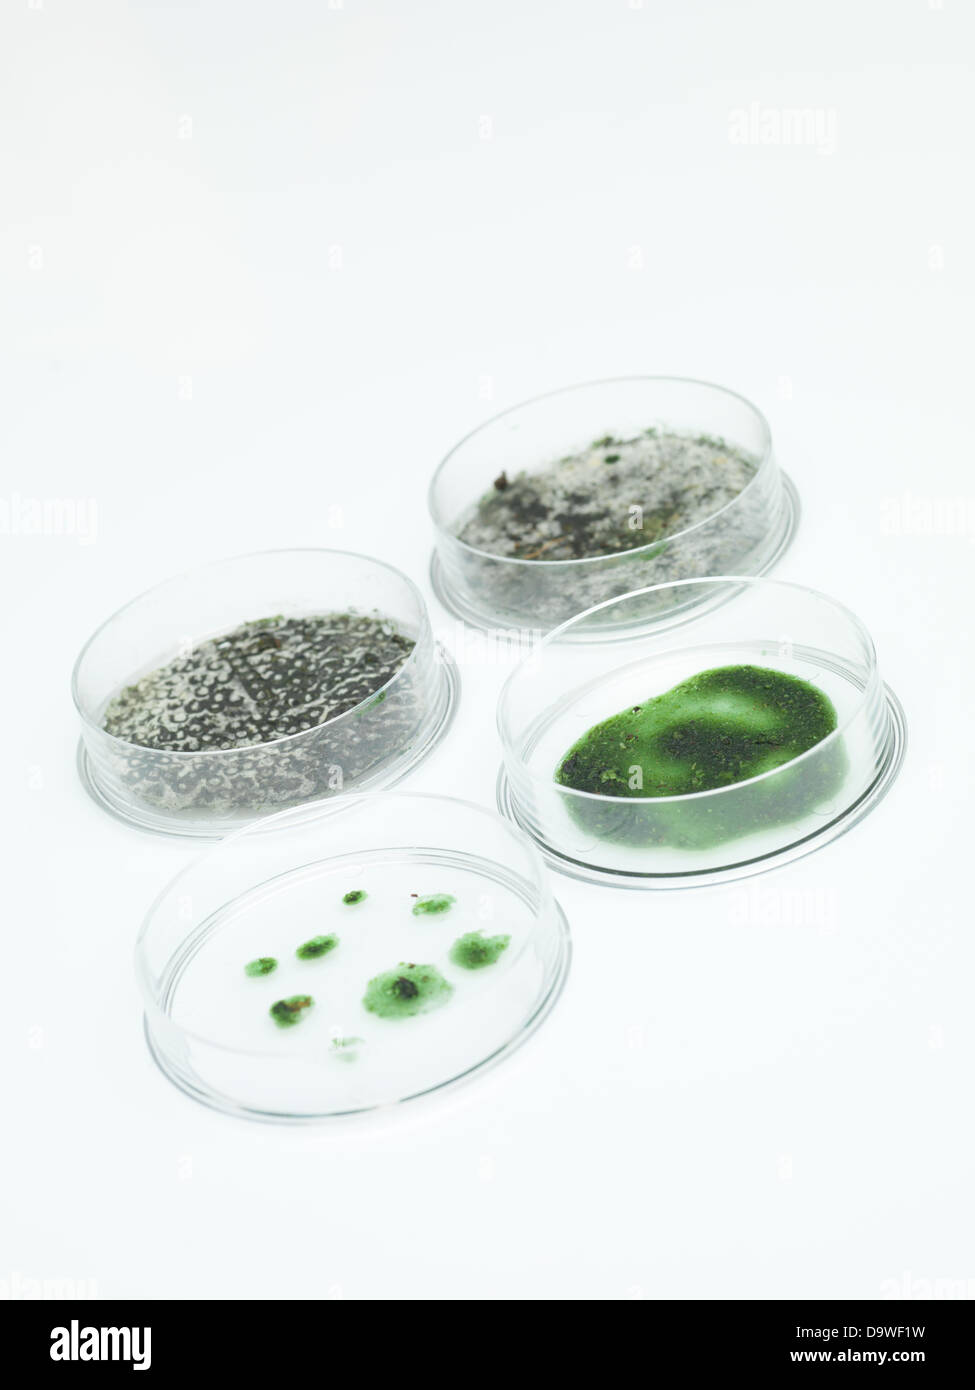 Vue en perspective de quatre différents stades de développement de moisissure verte dans des boîtes de Petri Banque D'Images